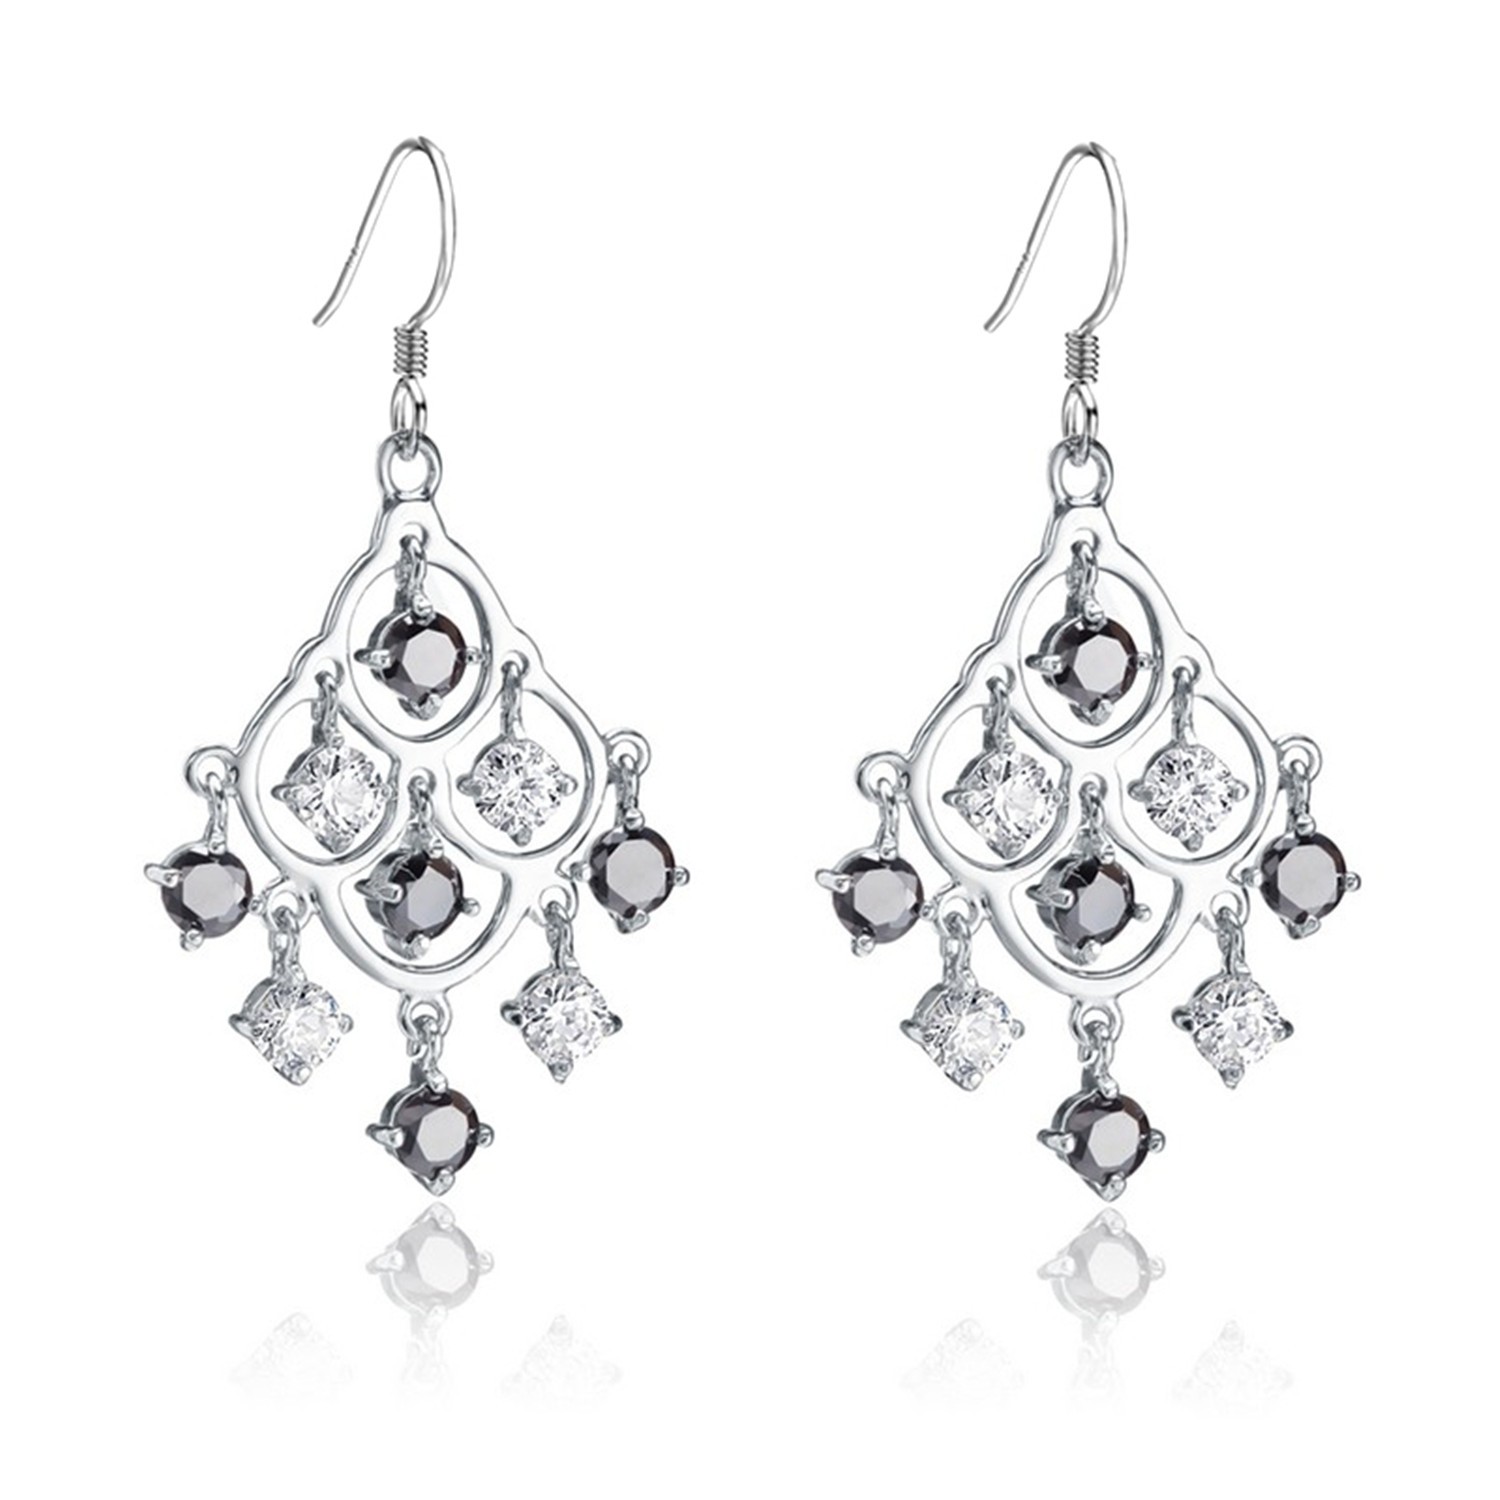 Women elegant 925 sterling silver hook earring pendant drop earrings wedding jewelry